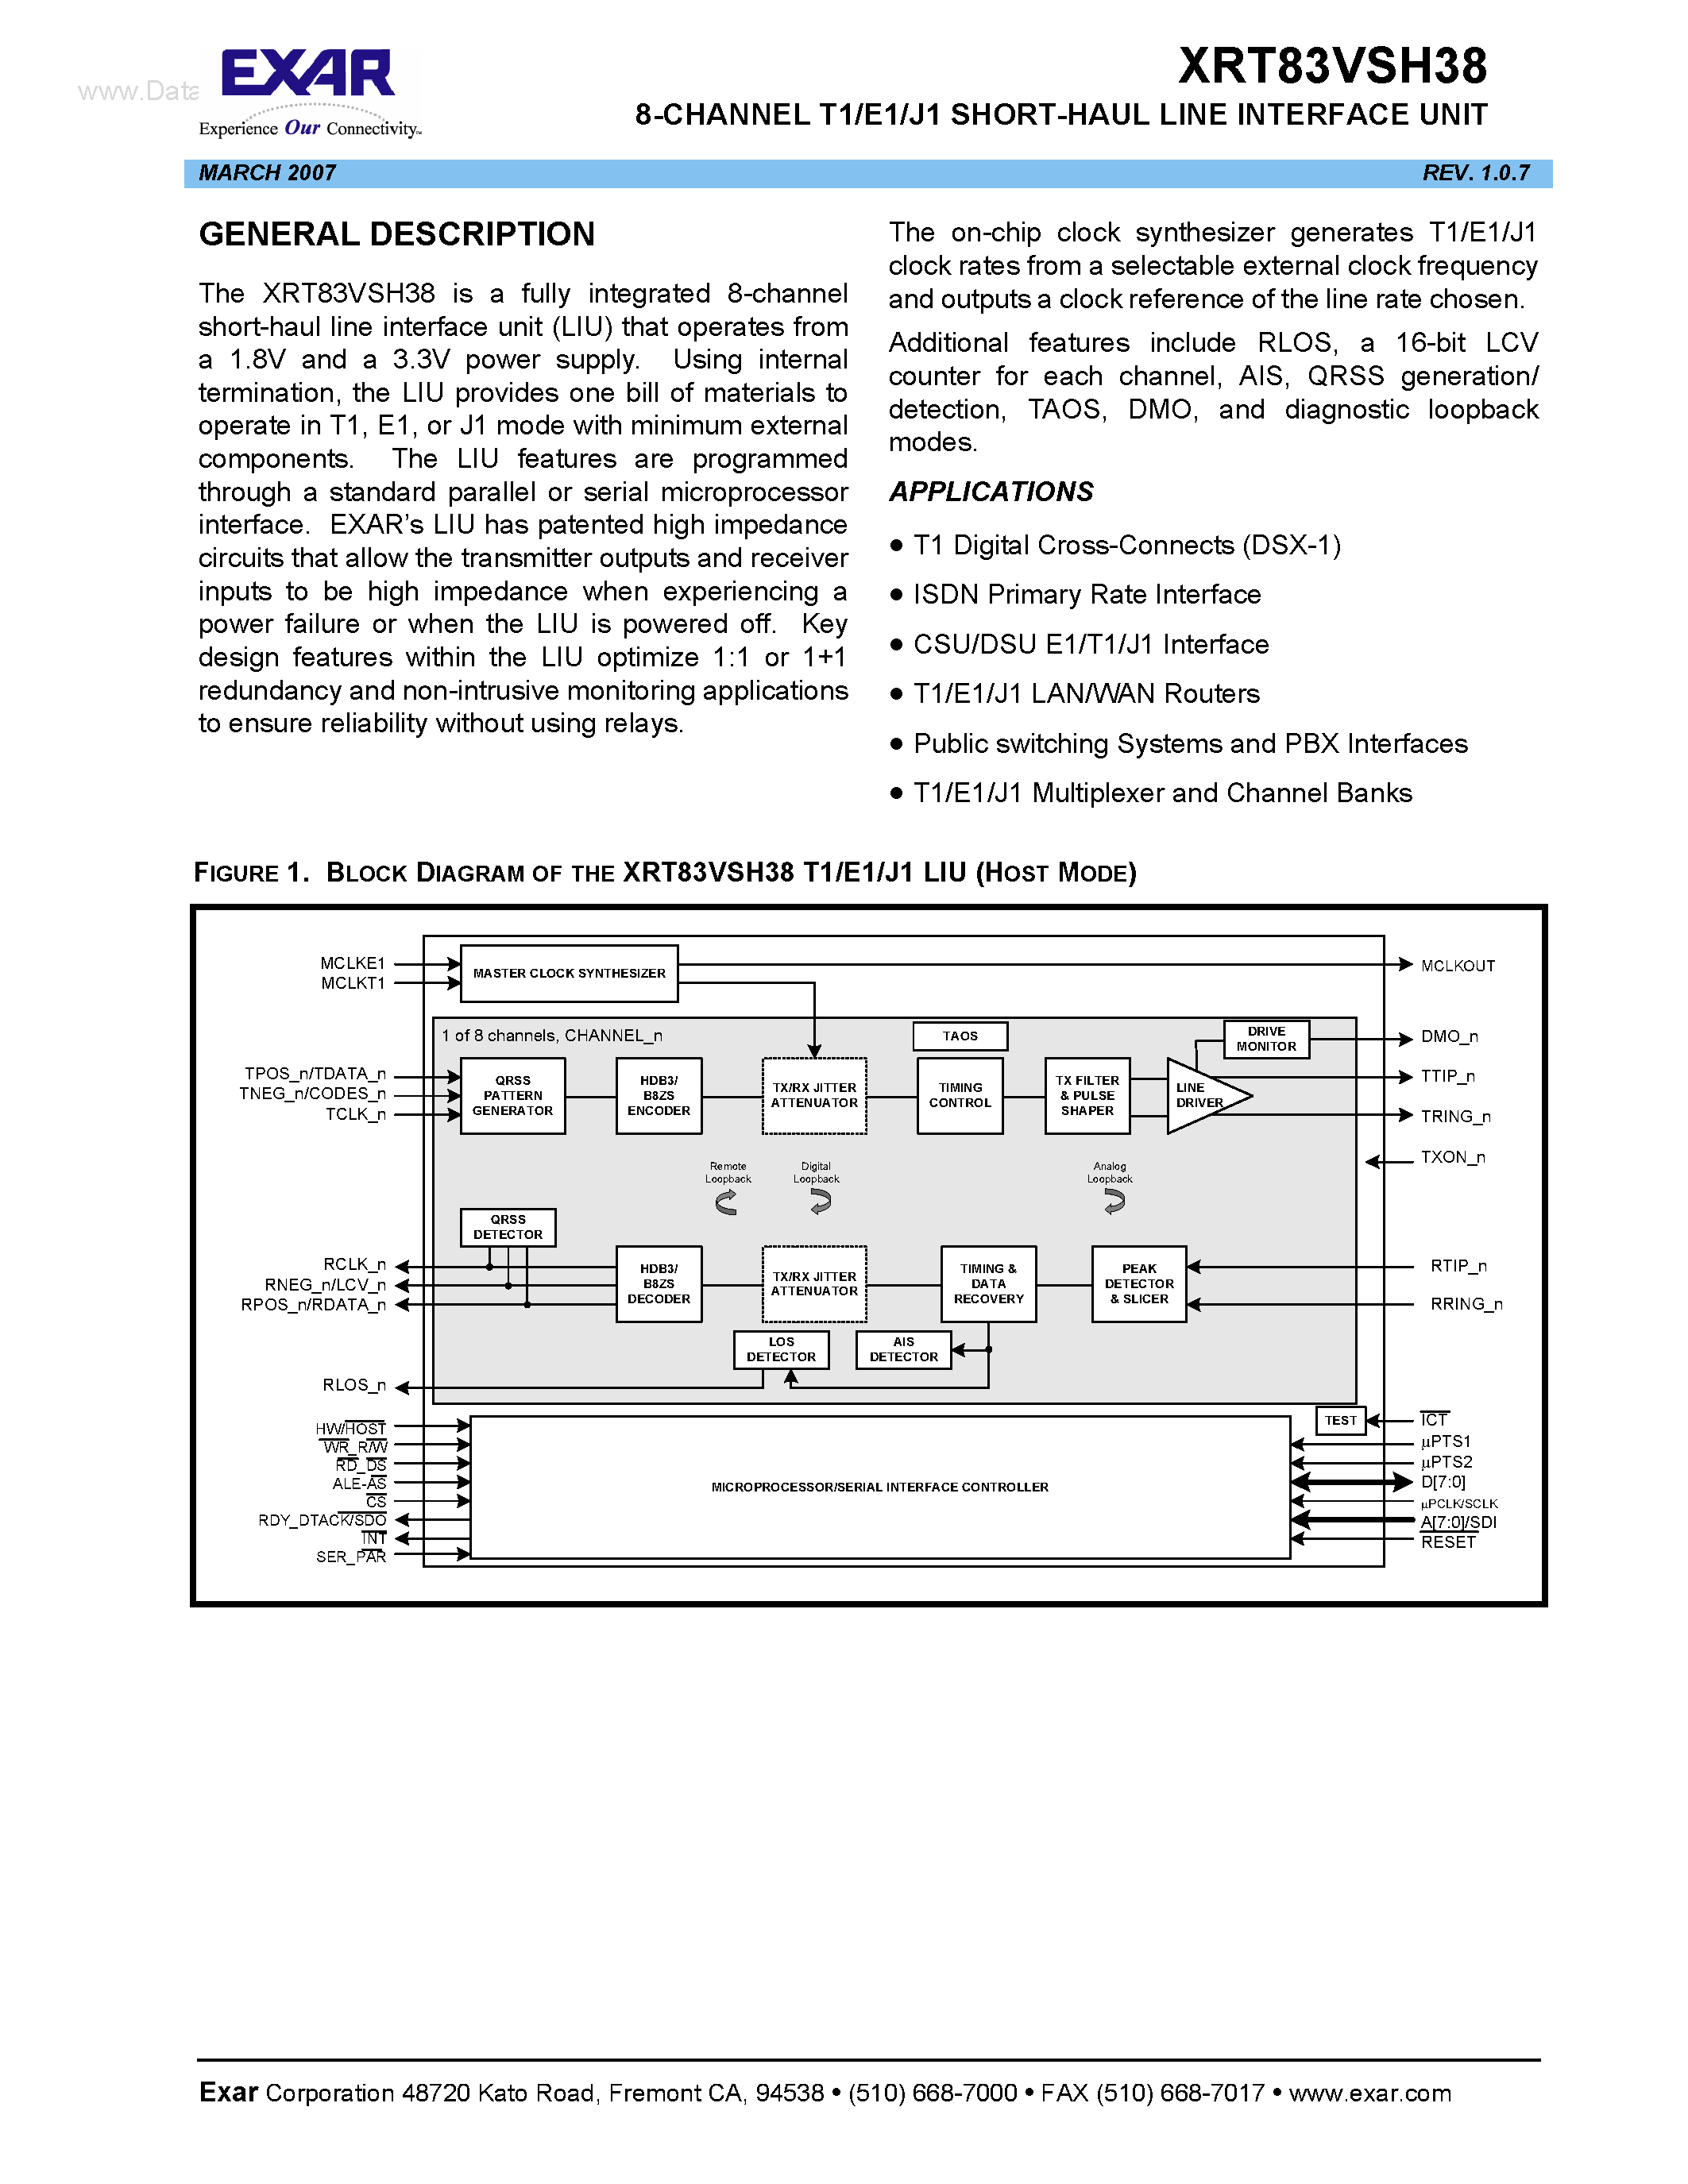 Datasheet XRT83VSH38 - 8-CHANNEL T1/E1/J1 SHORT-HAUL LINE INTERFACE UNIT page 1